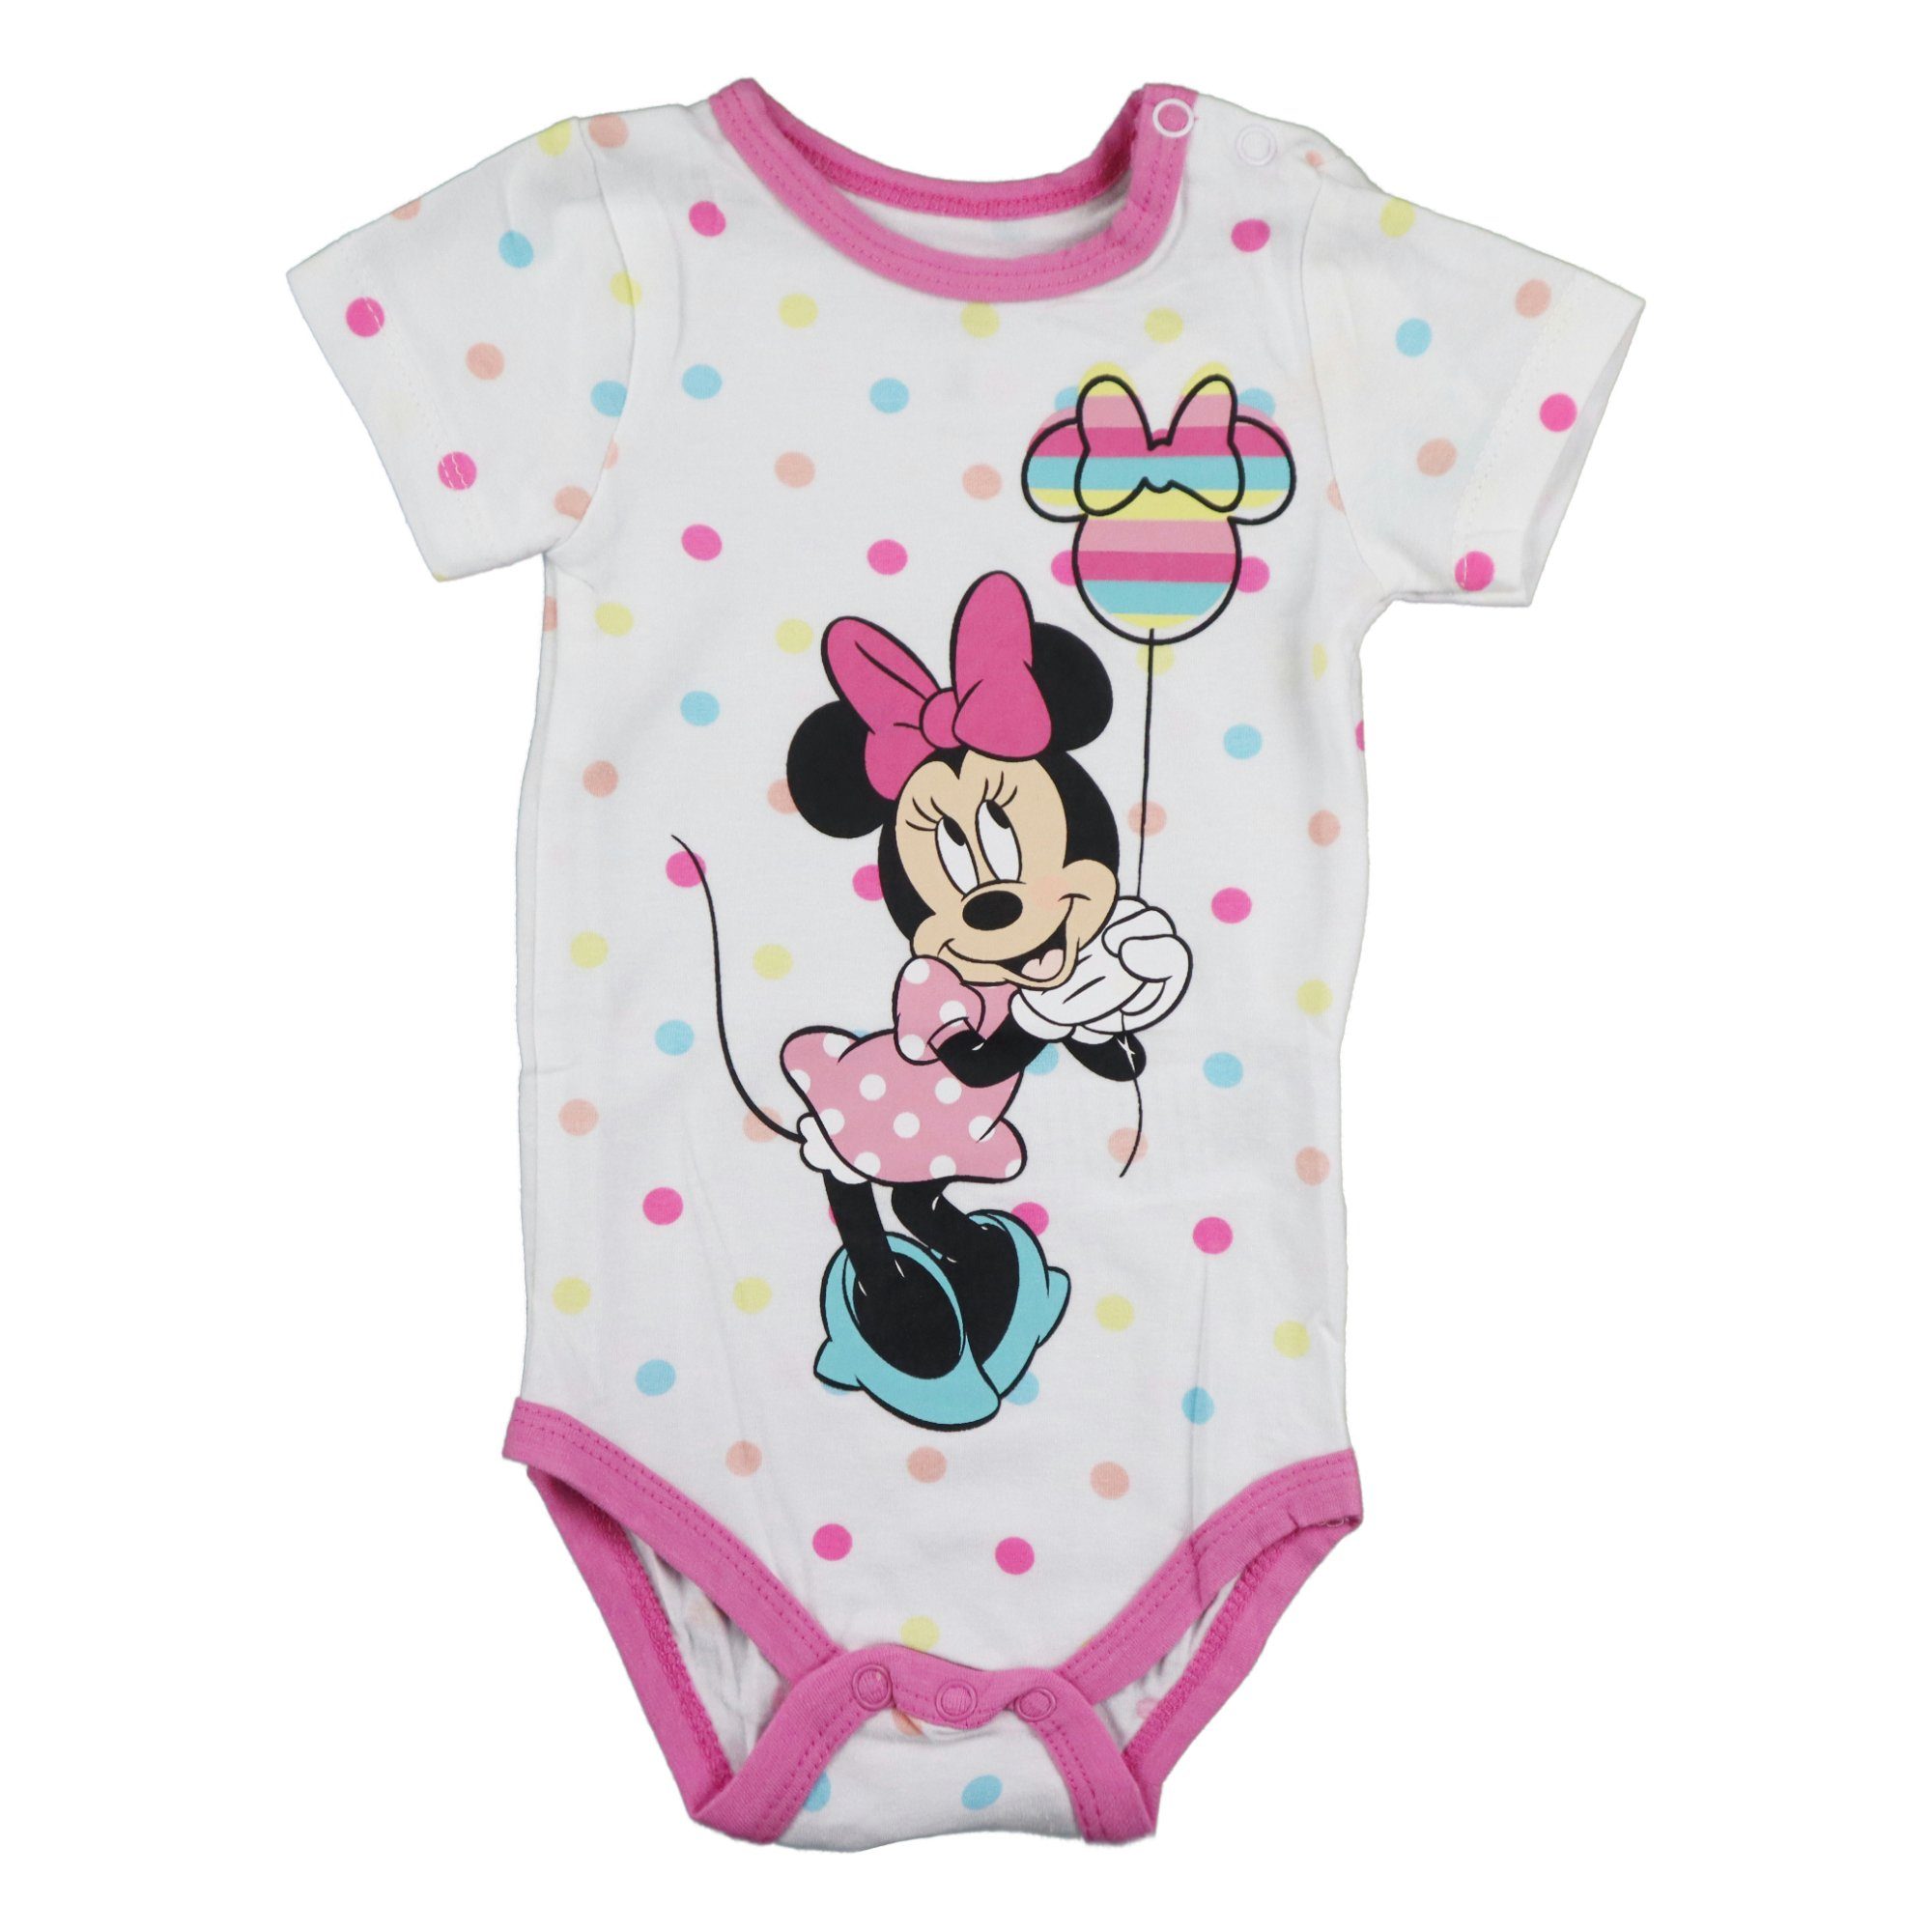 Disney Minnie Mouse Kurzarmwickelbody Minnie Maus Baby kurzarm Body Strampler Gr. 68 bis 92